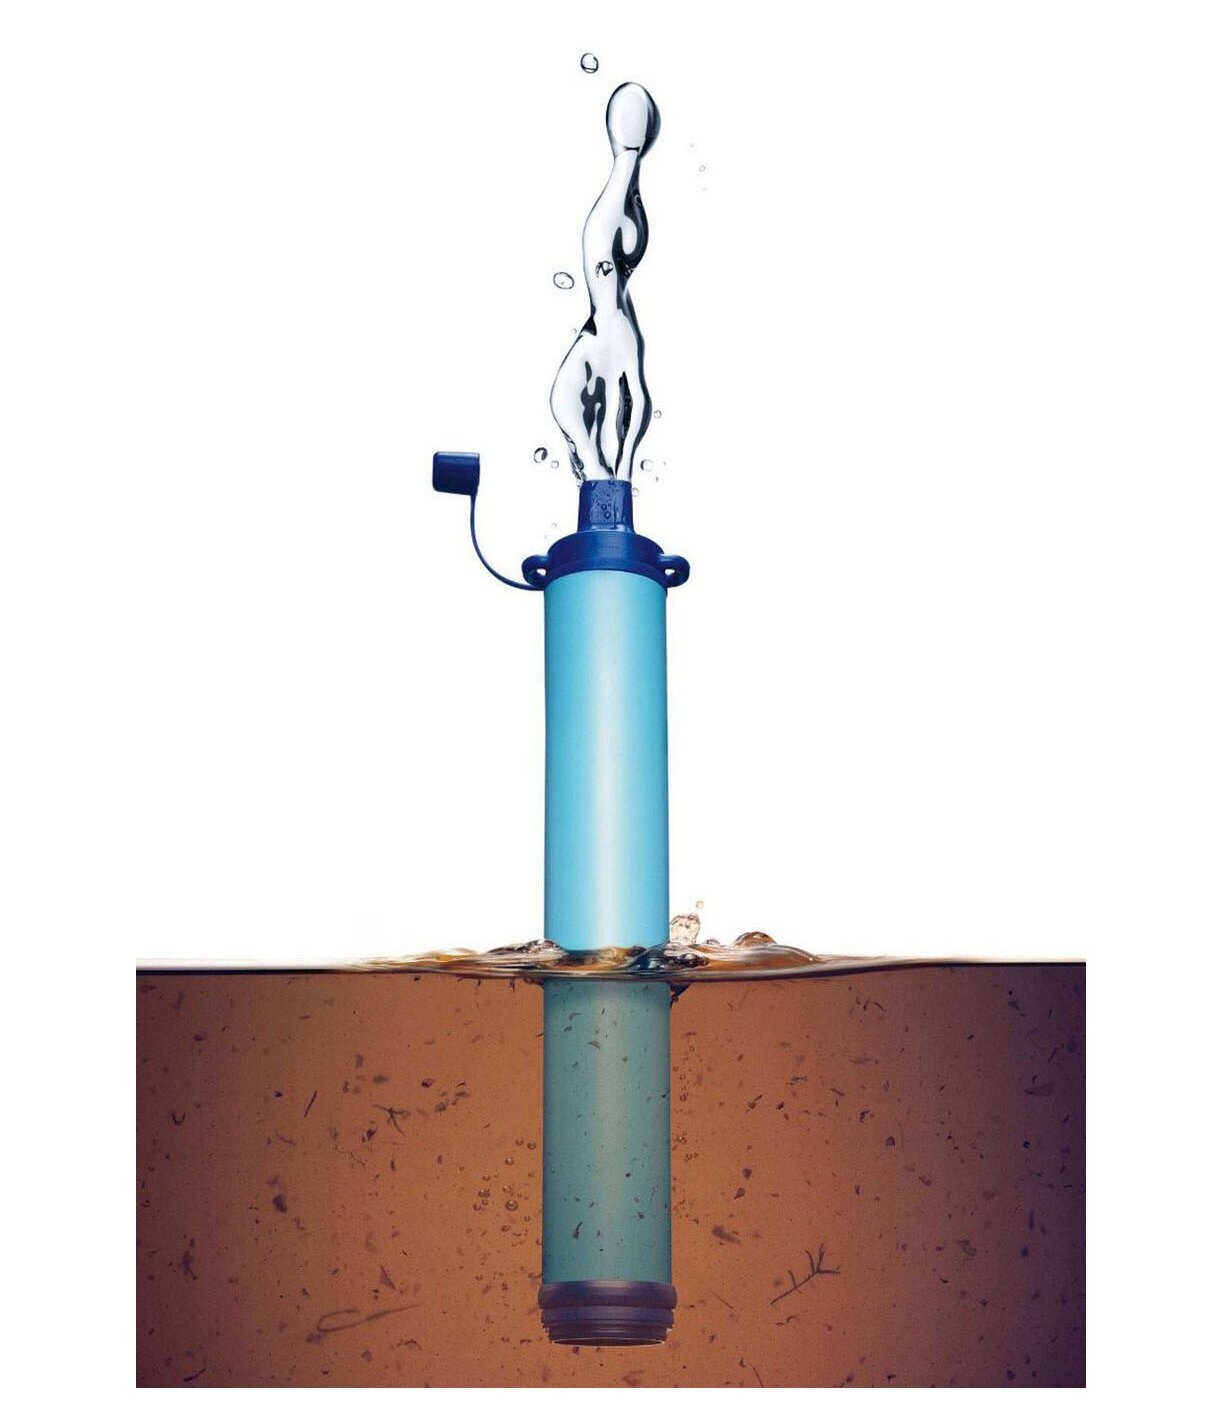 Фильтр-трубочка реплика LifeStraw/очистка воды/питьевая вода/походный фильтр/от бактерий/без примесей/переносной/на природу/компактный/карманный